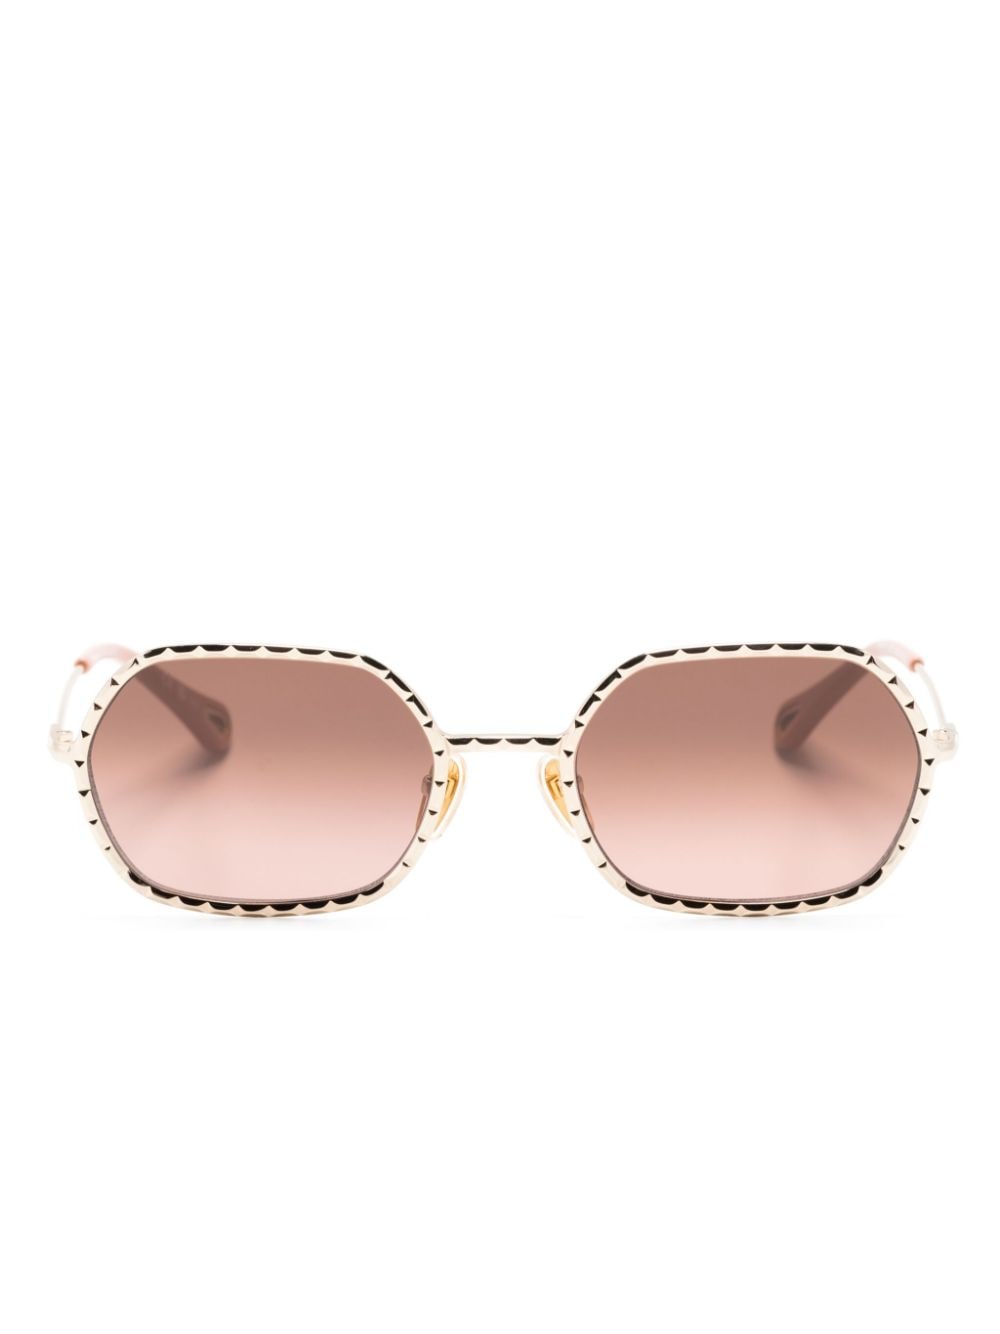 Chloé Eyewear Sonnenbrille mit geometrischem Gestell - Gold von Chloé Eyewear